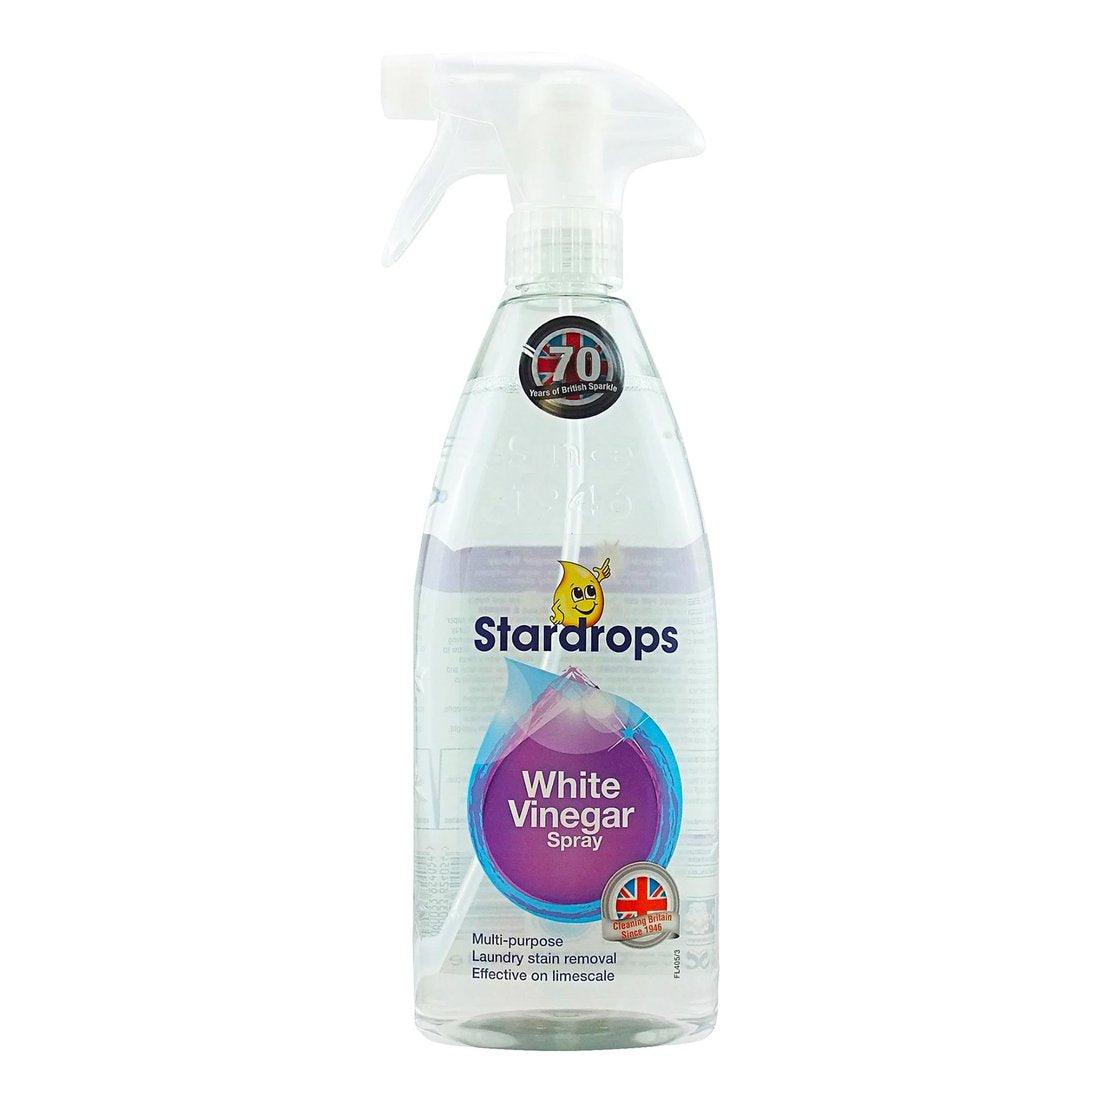 Stardrops White Vinegar Spray 750ml - Vending Superstore